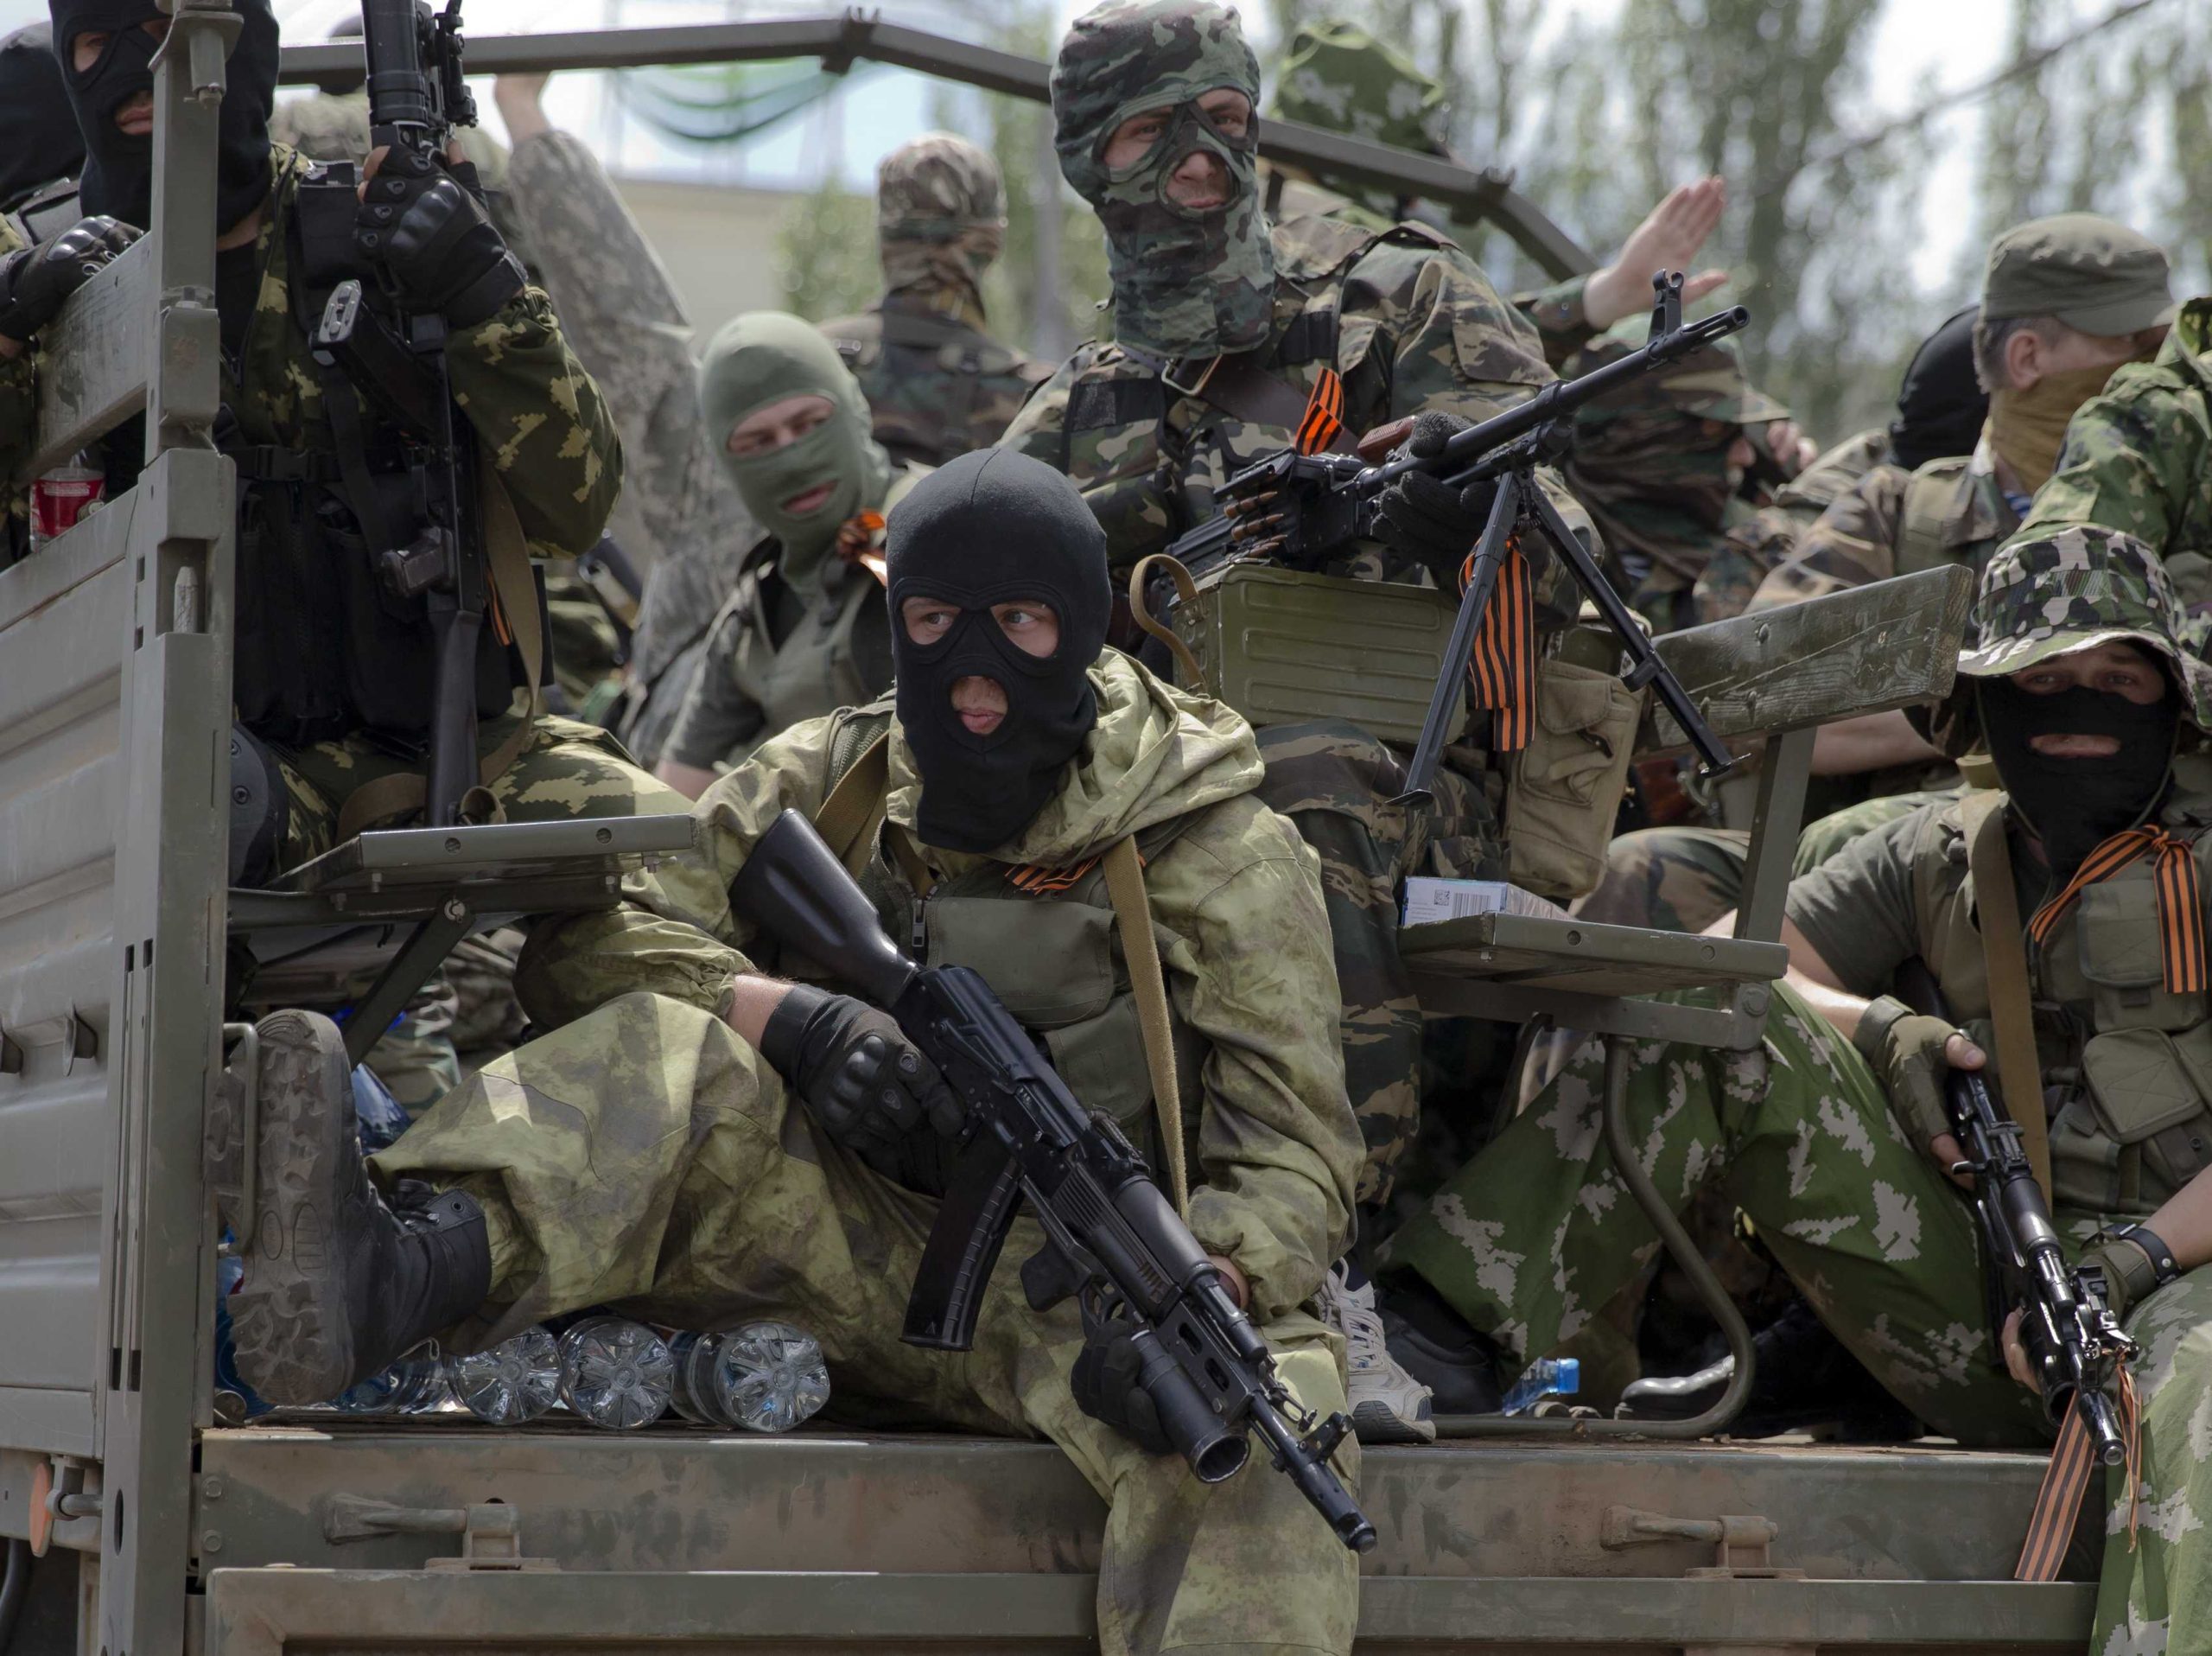 Ανατολική Ουκρανία: Οι συγκρούσεις μαίνονται – Κυβερνητικοί βομβάρδισαν με ρουκέτες ρωσόφωνους